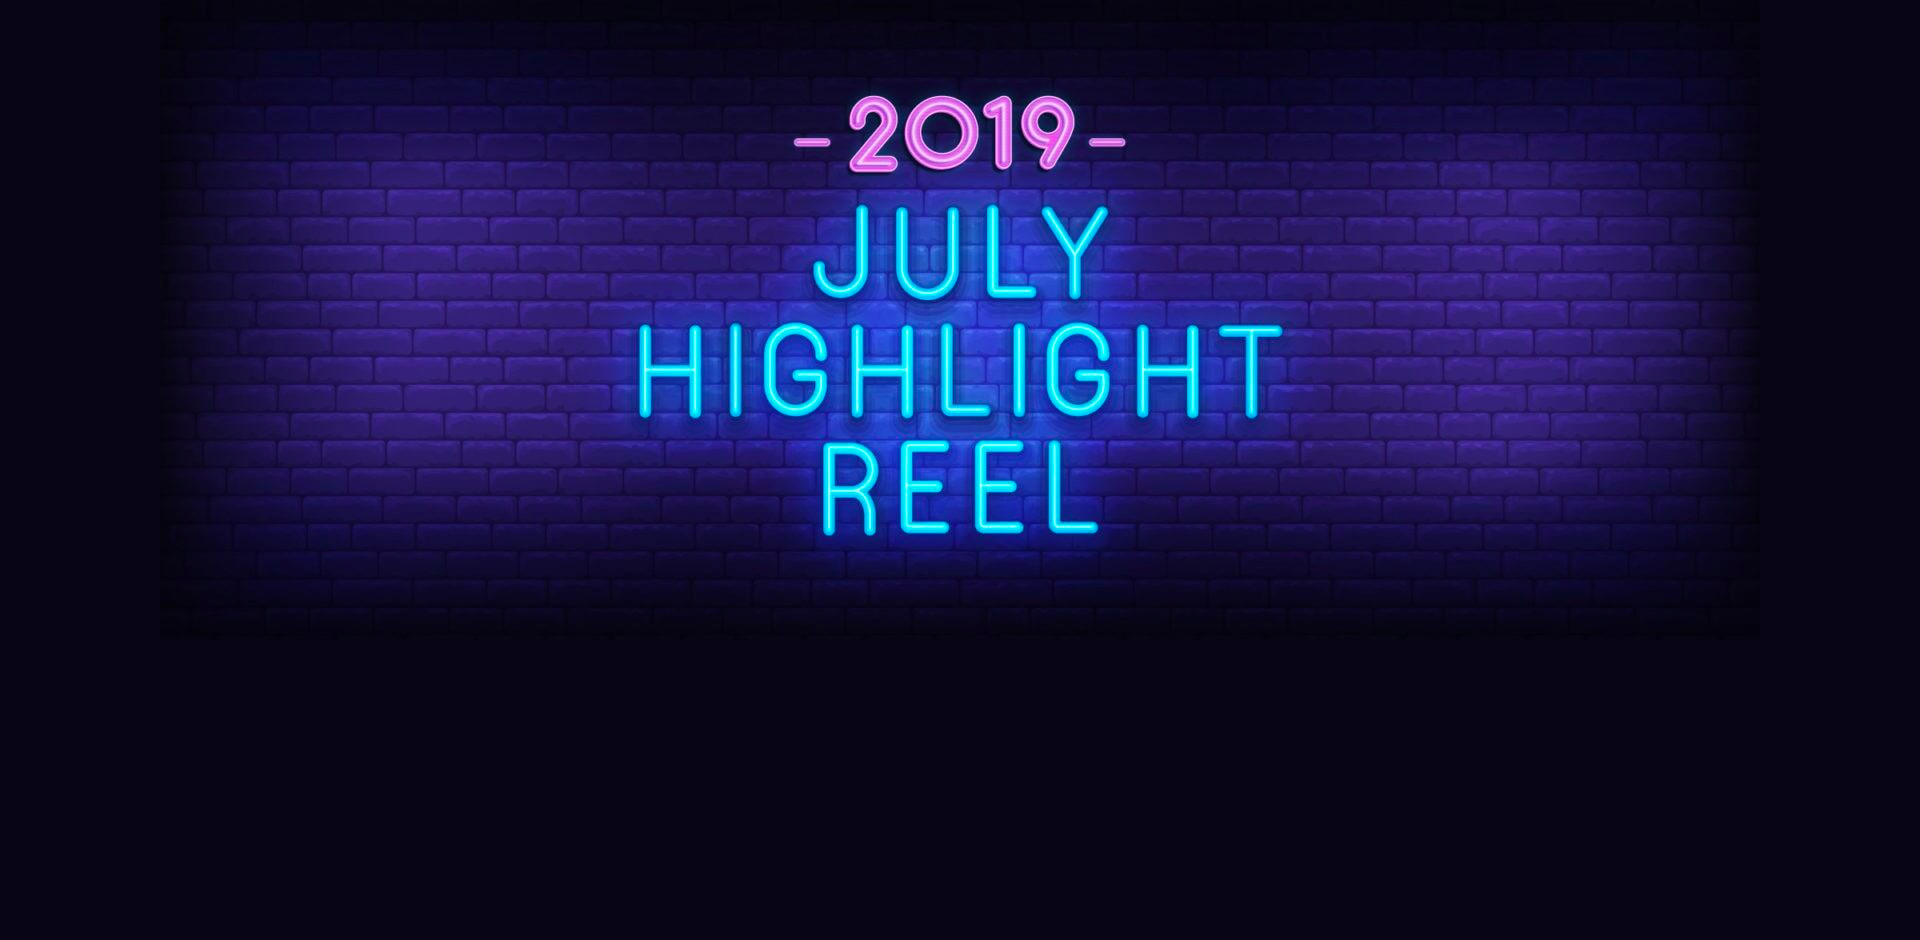 2019 July Highlight Reel